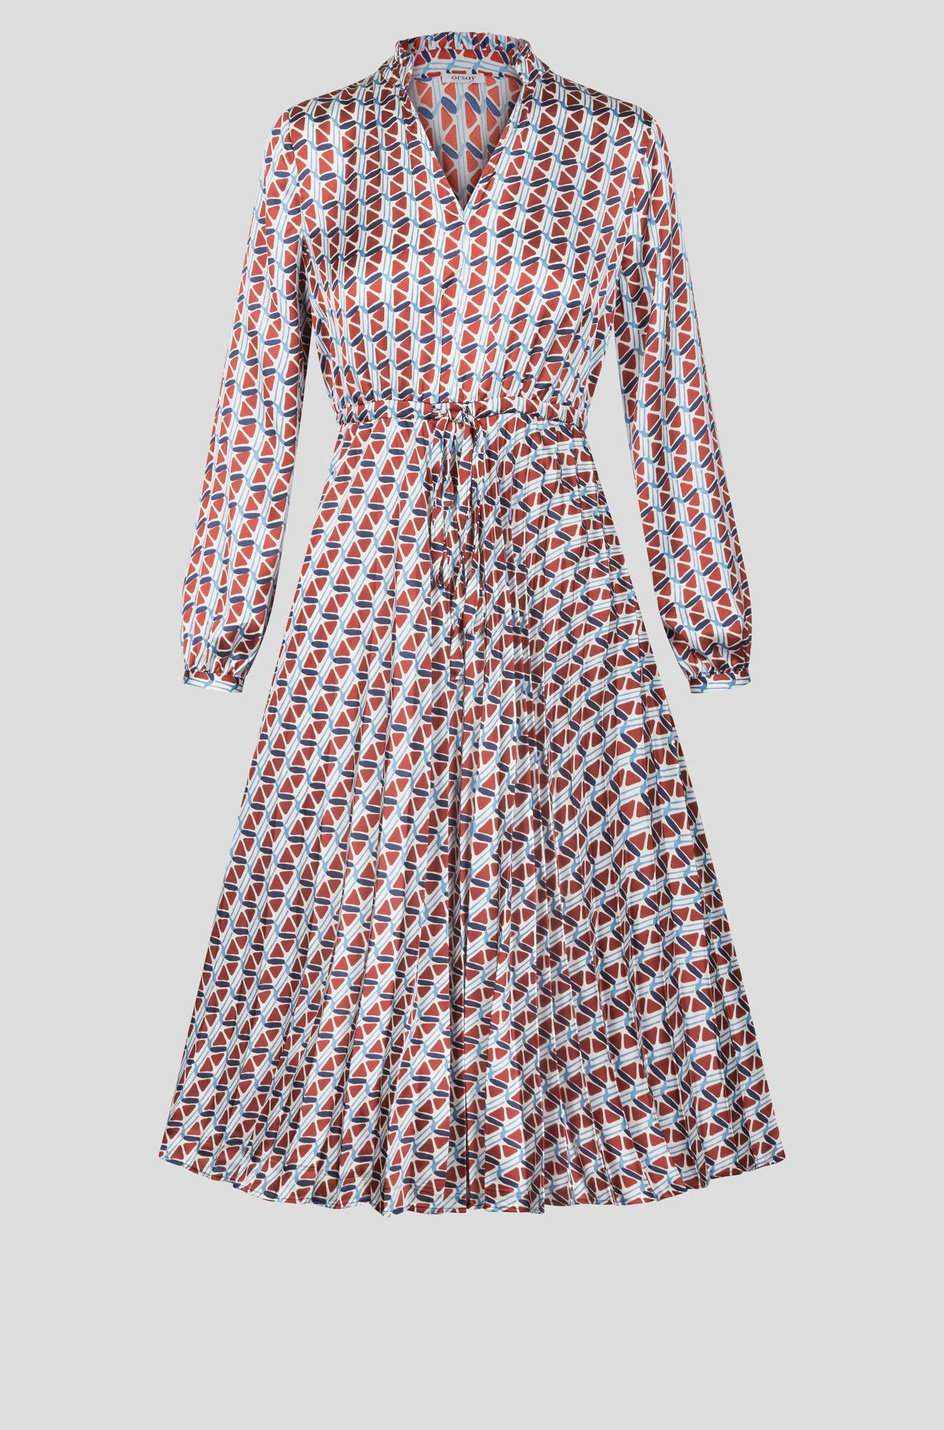 Orsay Платье расклешенного кроя с принтом (цвет ), артикул 492011 | Фото 1